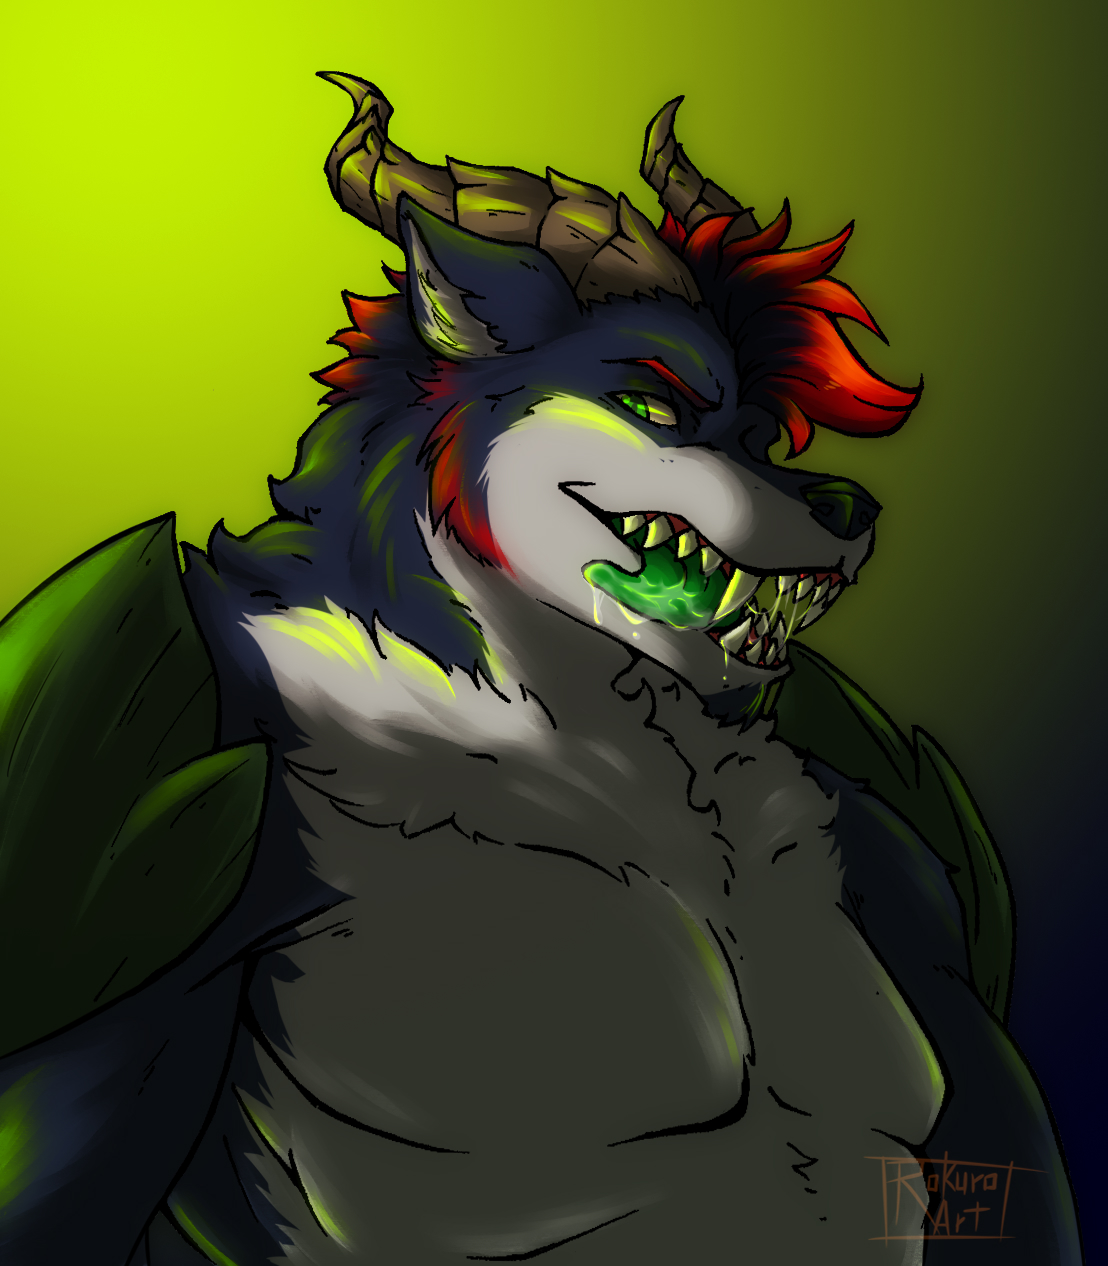 dragon wolf hybrid